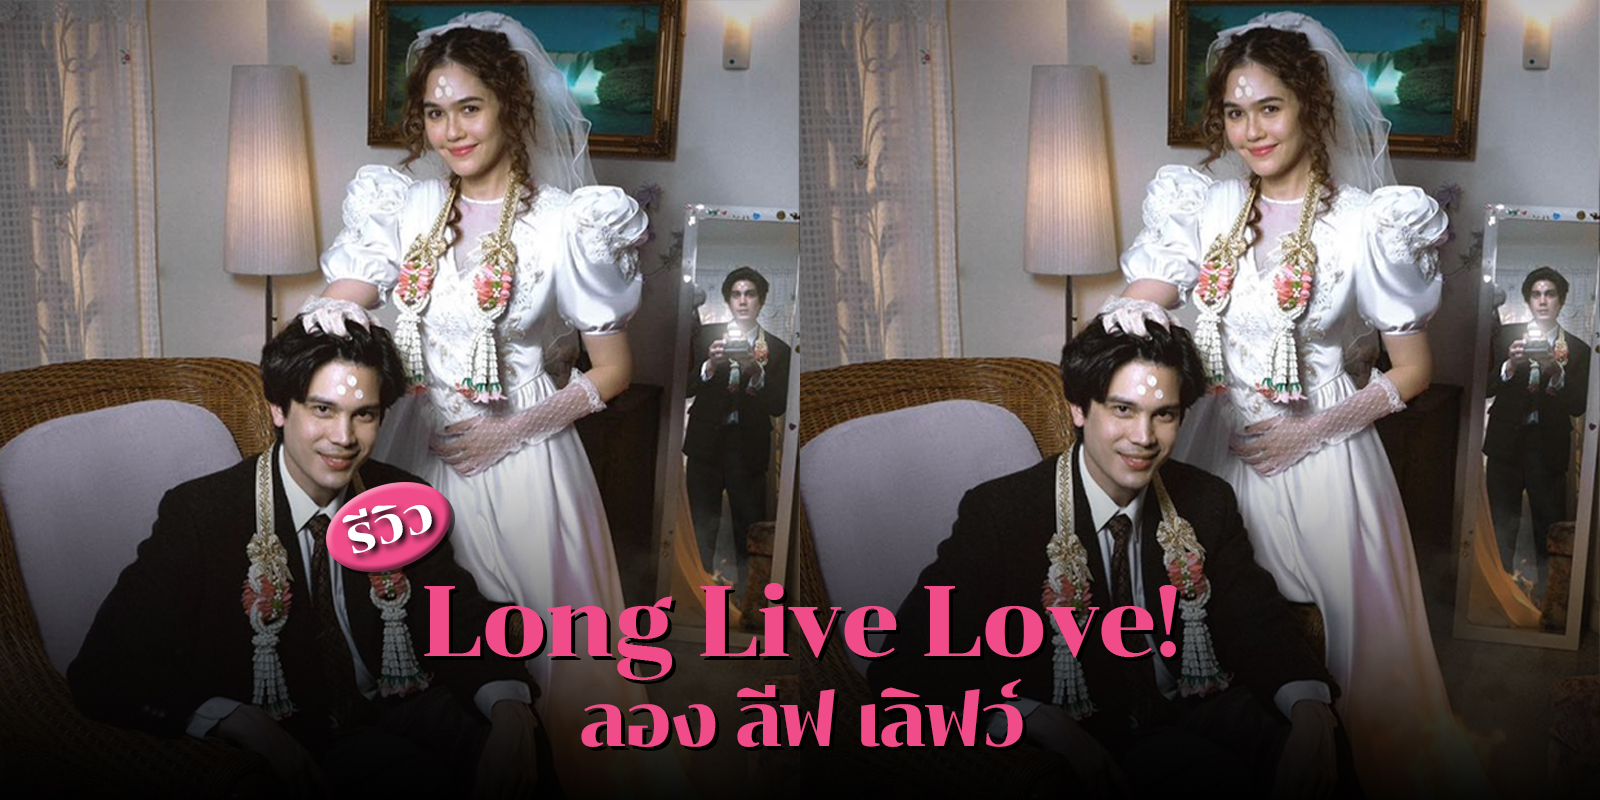 รีวิว Long Live Love! (ลอง ลีฟ เลิฟว์) หนังไทยรอมคอมน้ำดีแห่งปีที่ทุกคนไม่ควรพลาด